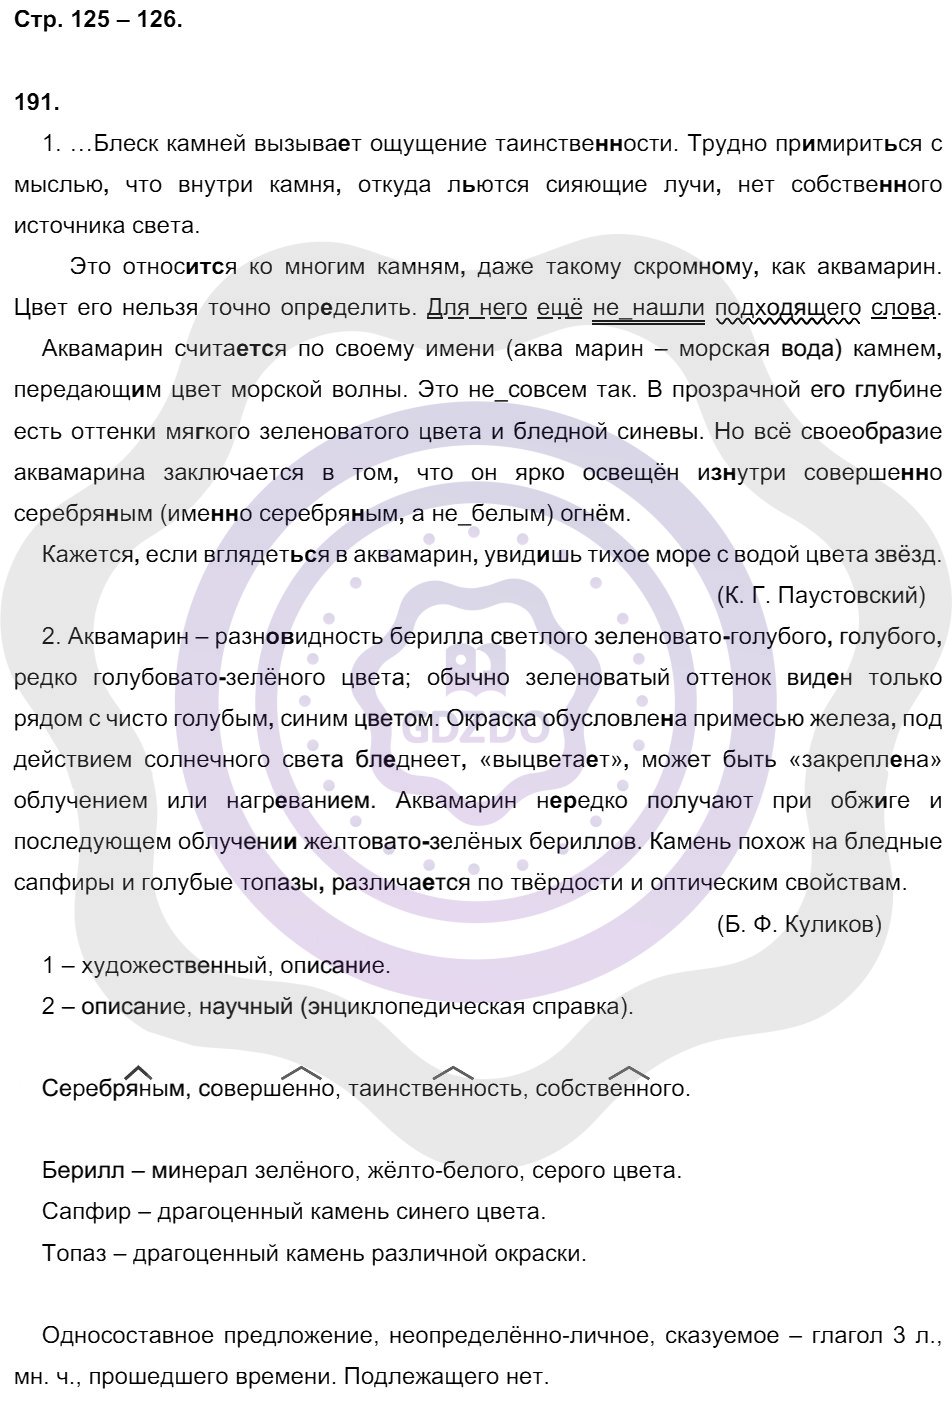 Ответы Русский язык 8 класс Кулаева Л. М. Страницы 125